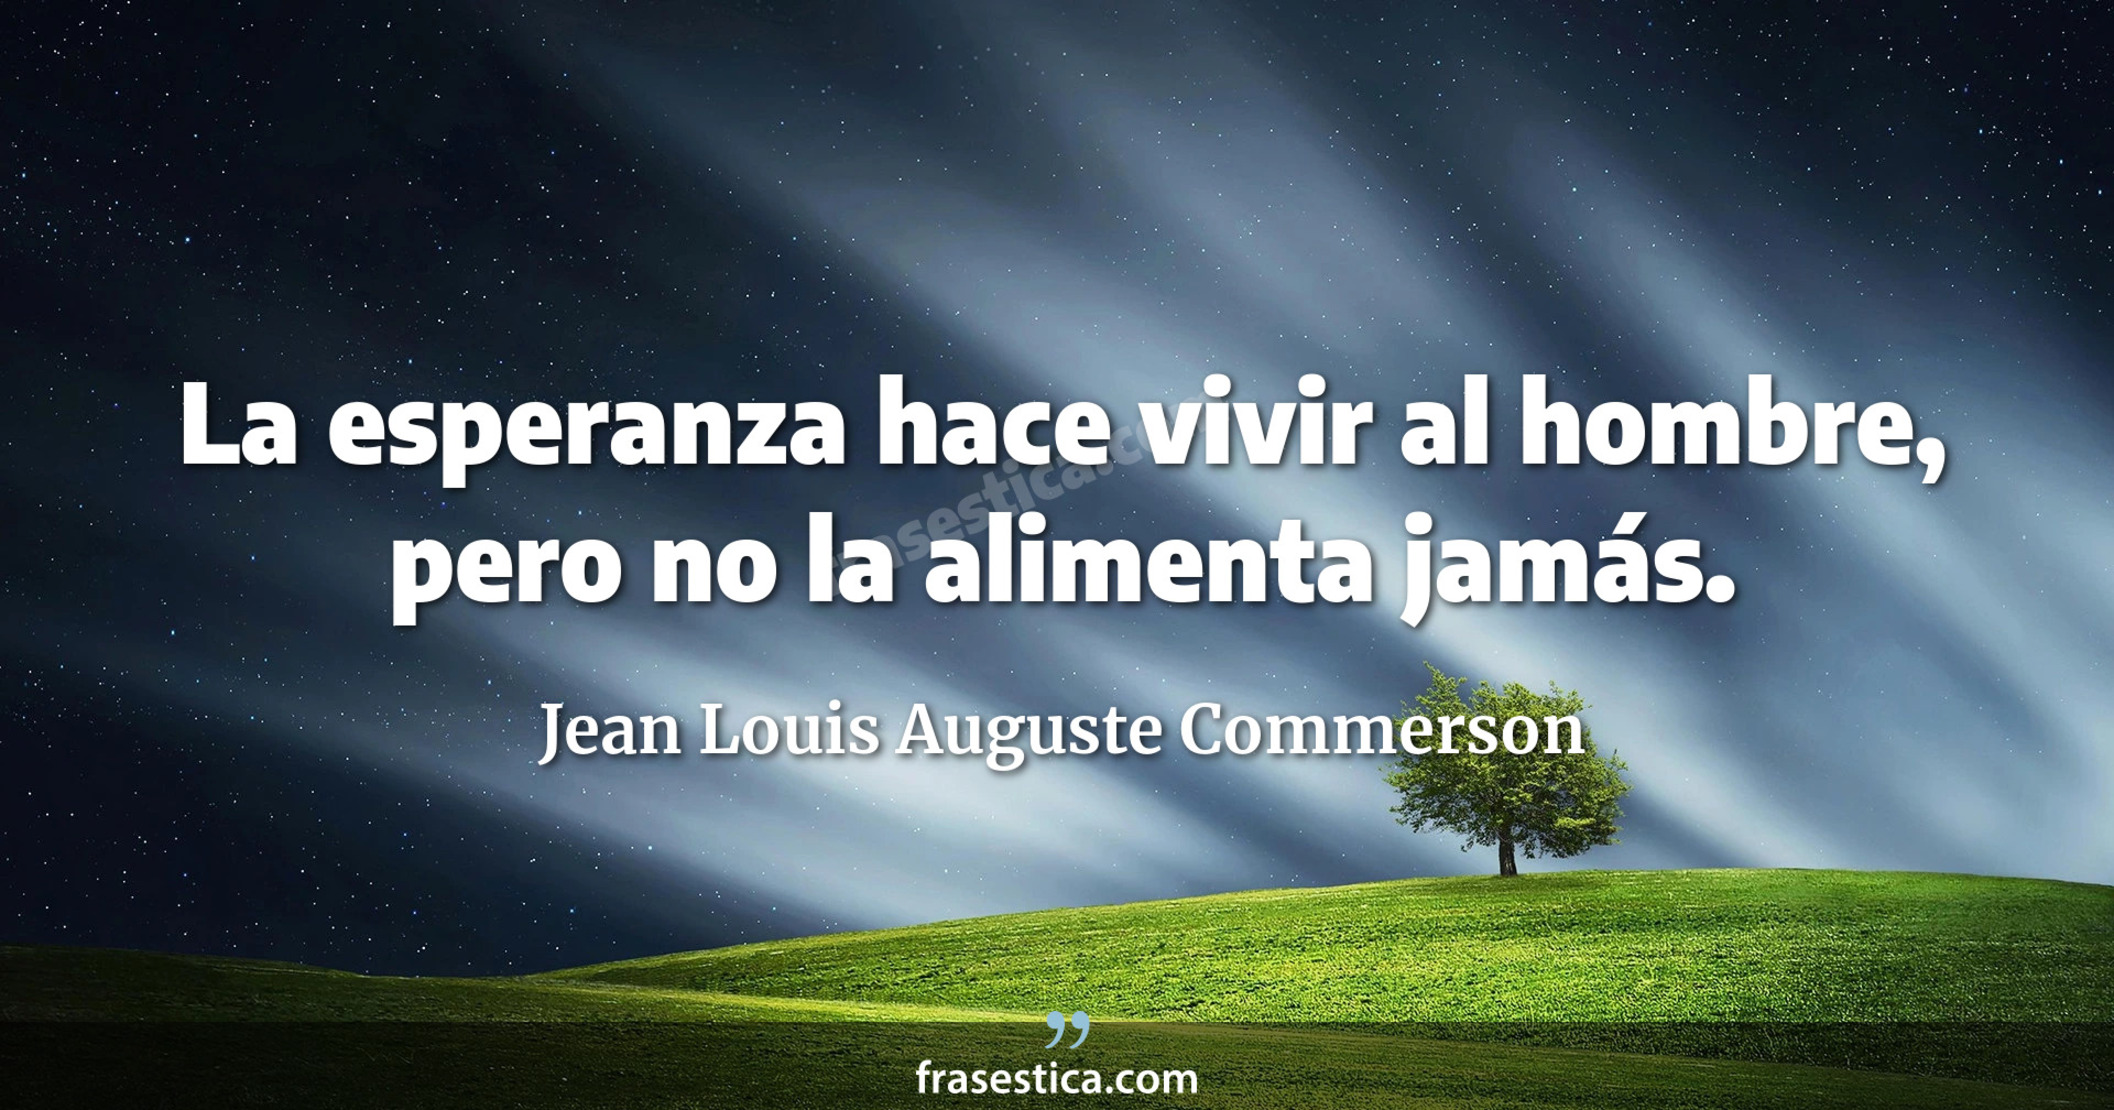 La esperanza hace vivir al hombre, pero no la alimenta jamás. - Jean Louis Auguste Commerson